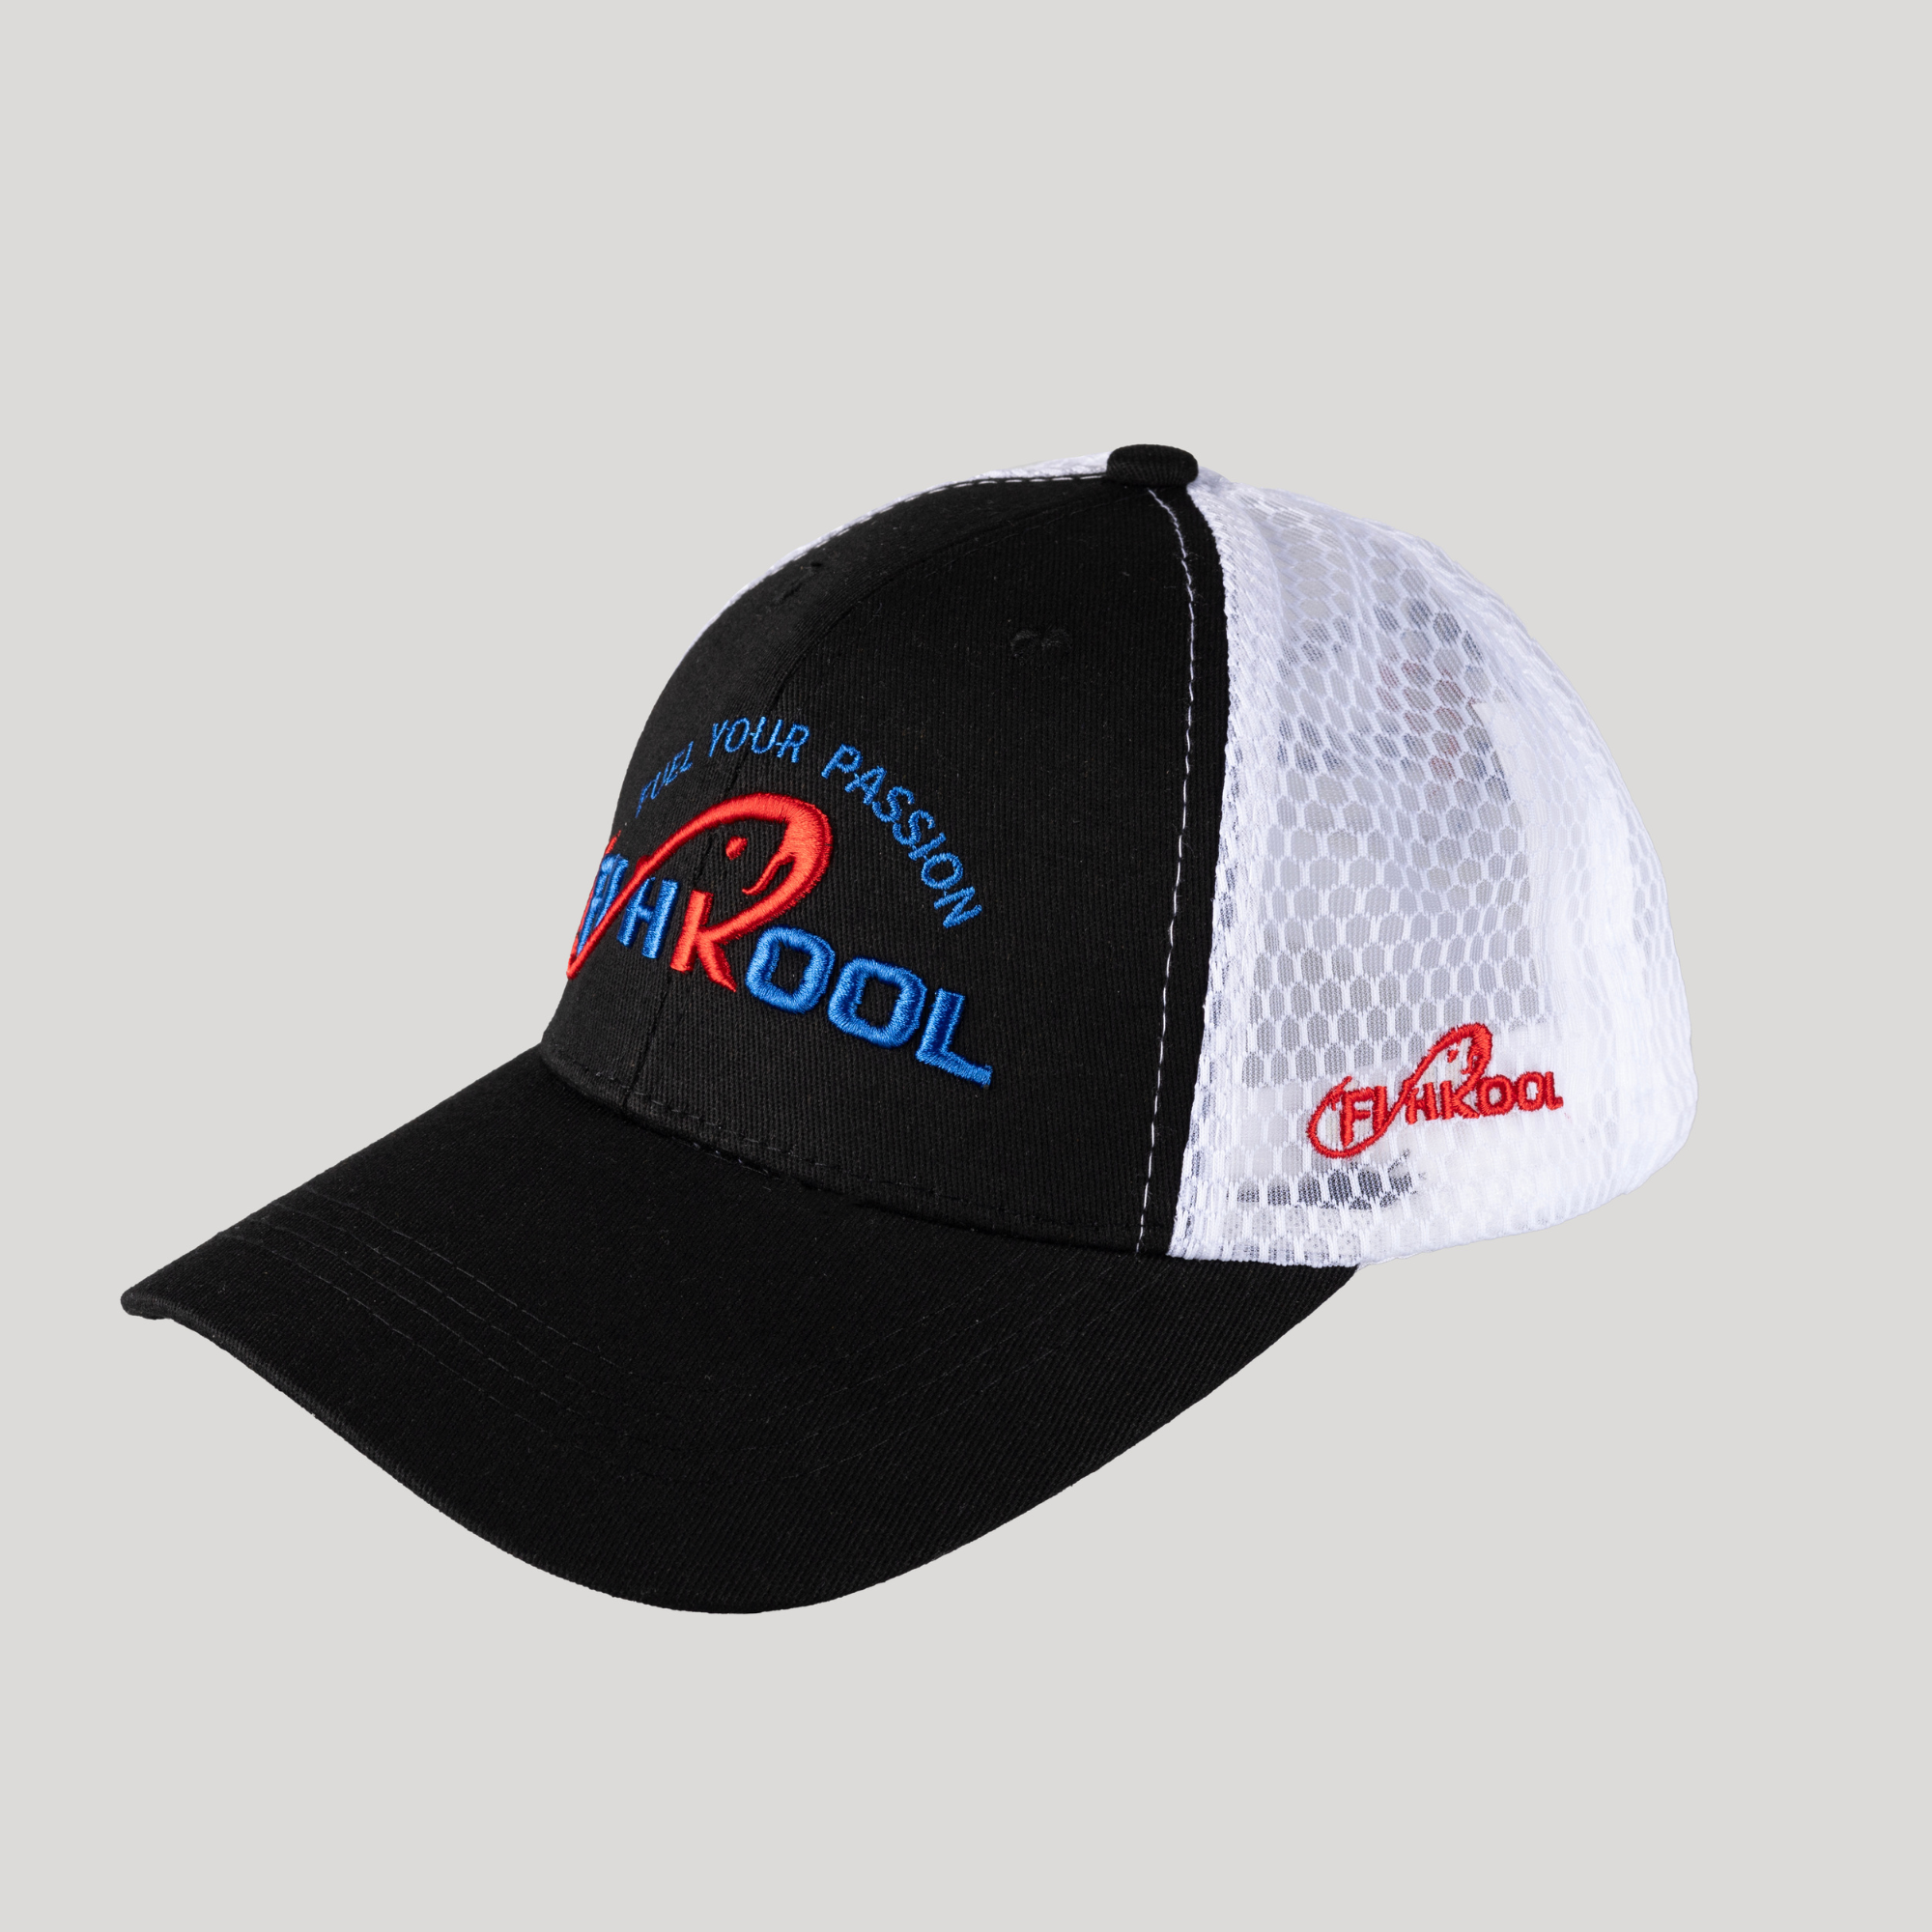 Fishkool Snapback Fishing Hat